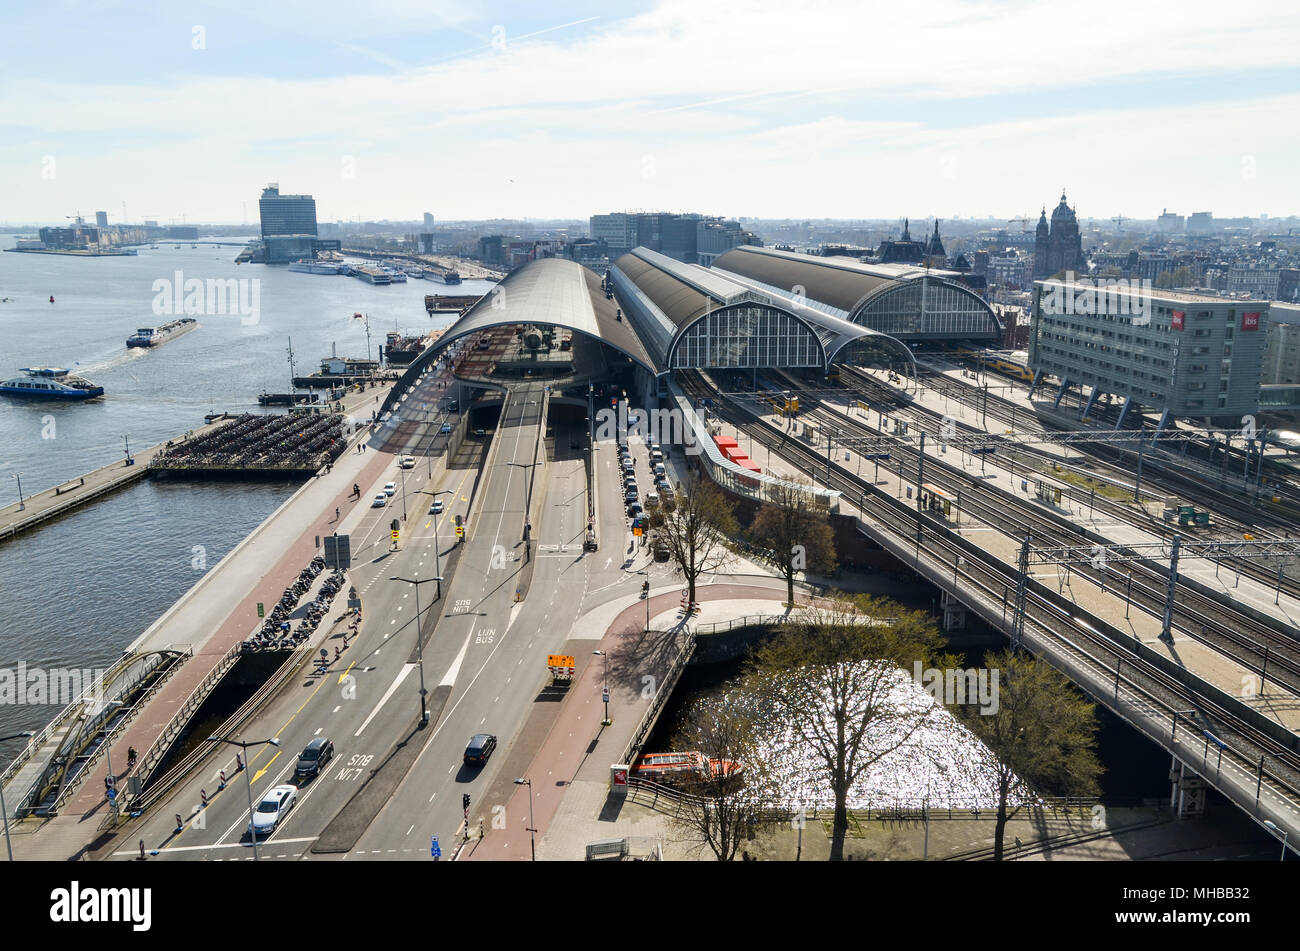 Vista aérea de la ciudad y de la Estación Central (Centraal Station) mostrando soluciones de movilidad (los trenes de los ferrocarriles, los automóviles en las calles, los transbordadores por vías navegables), Amsterdam Foto de stock